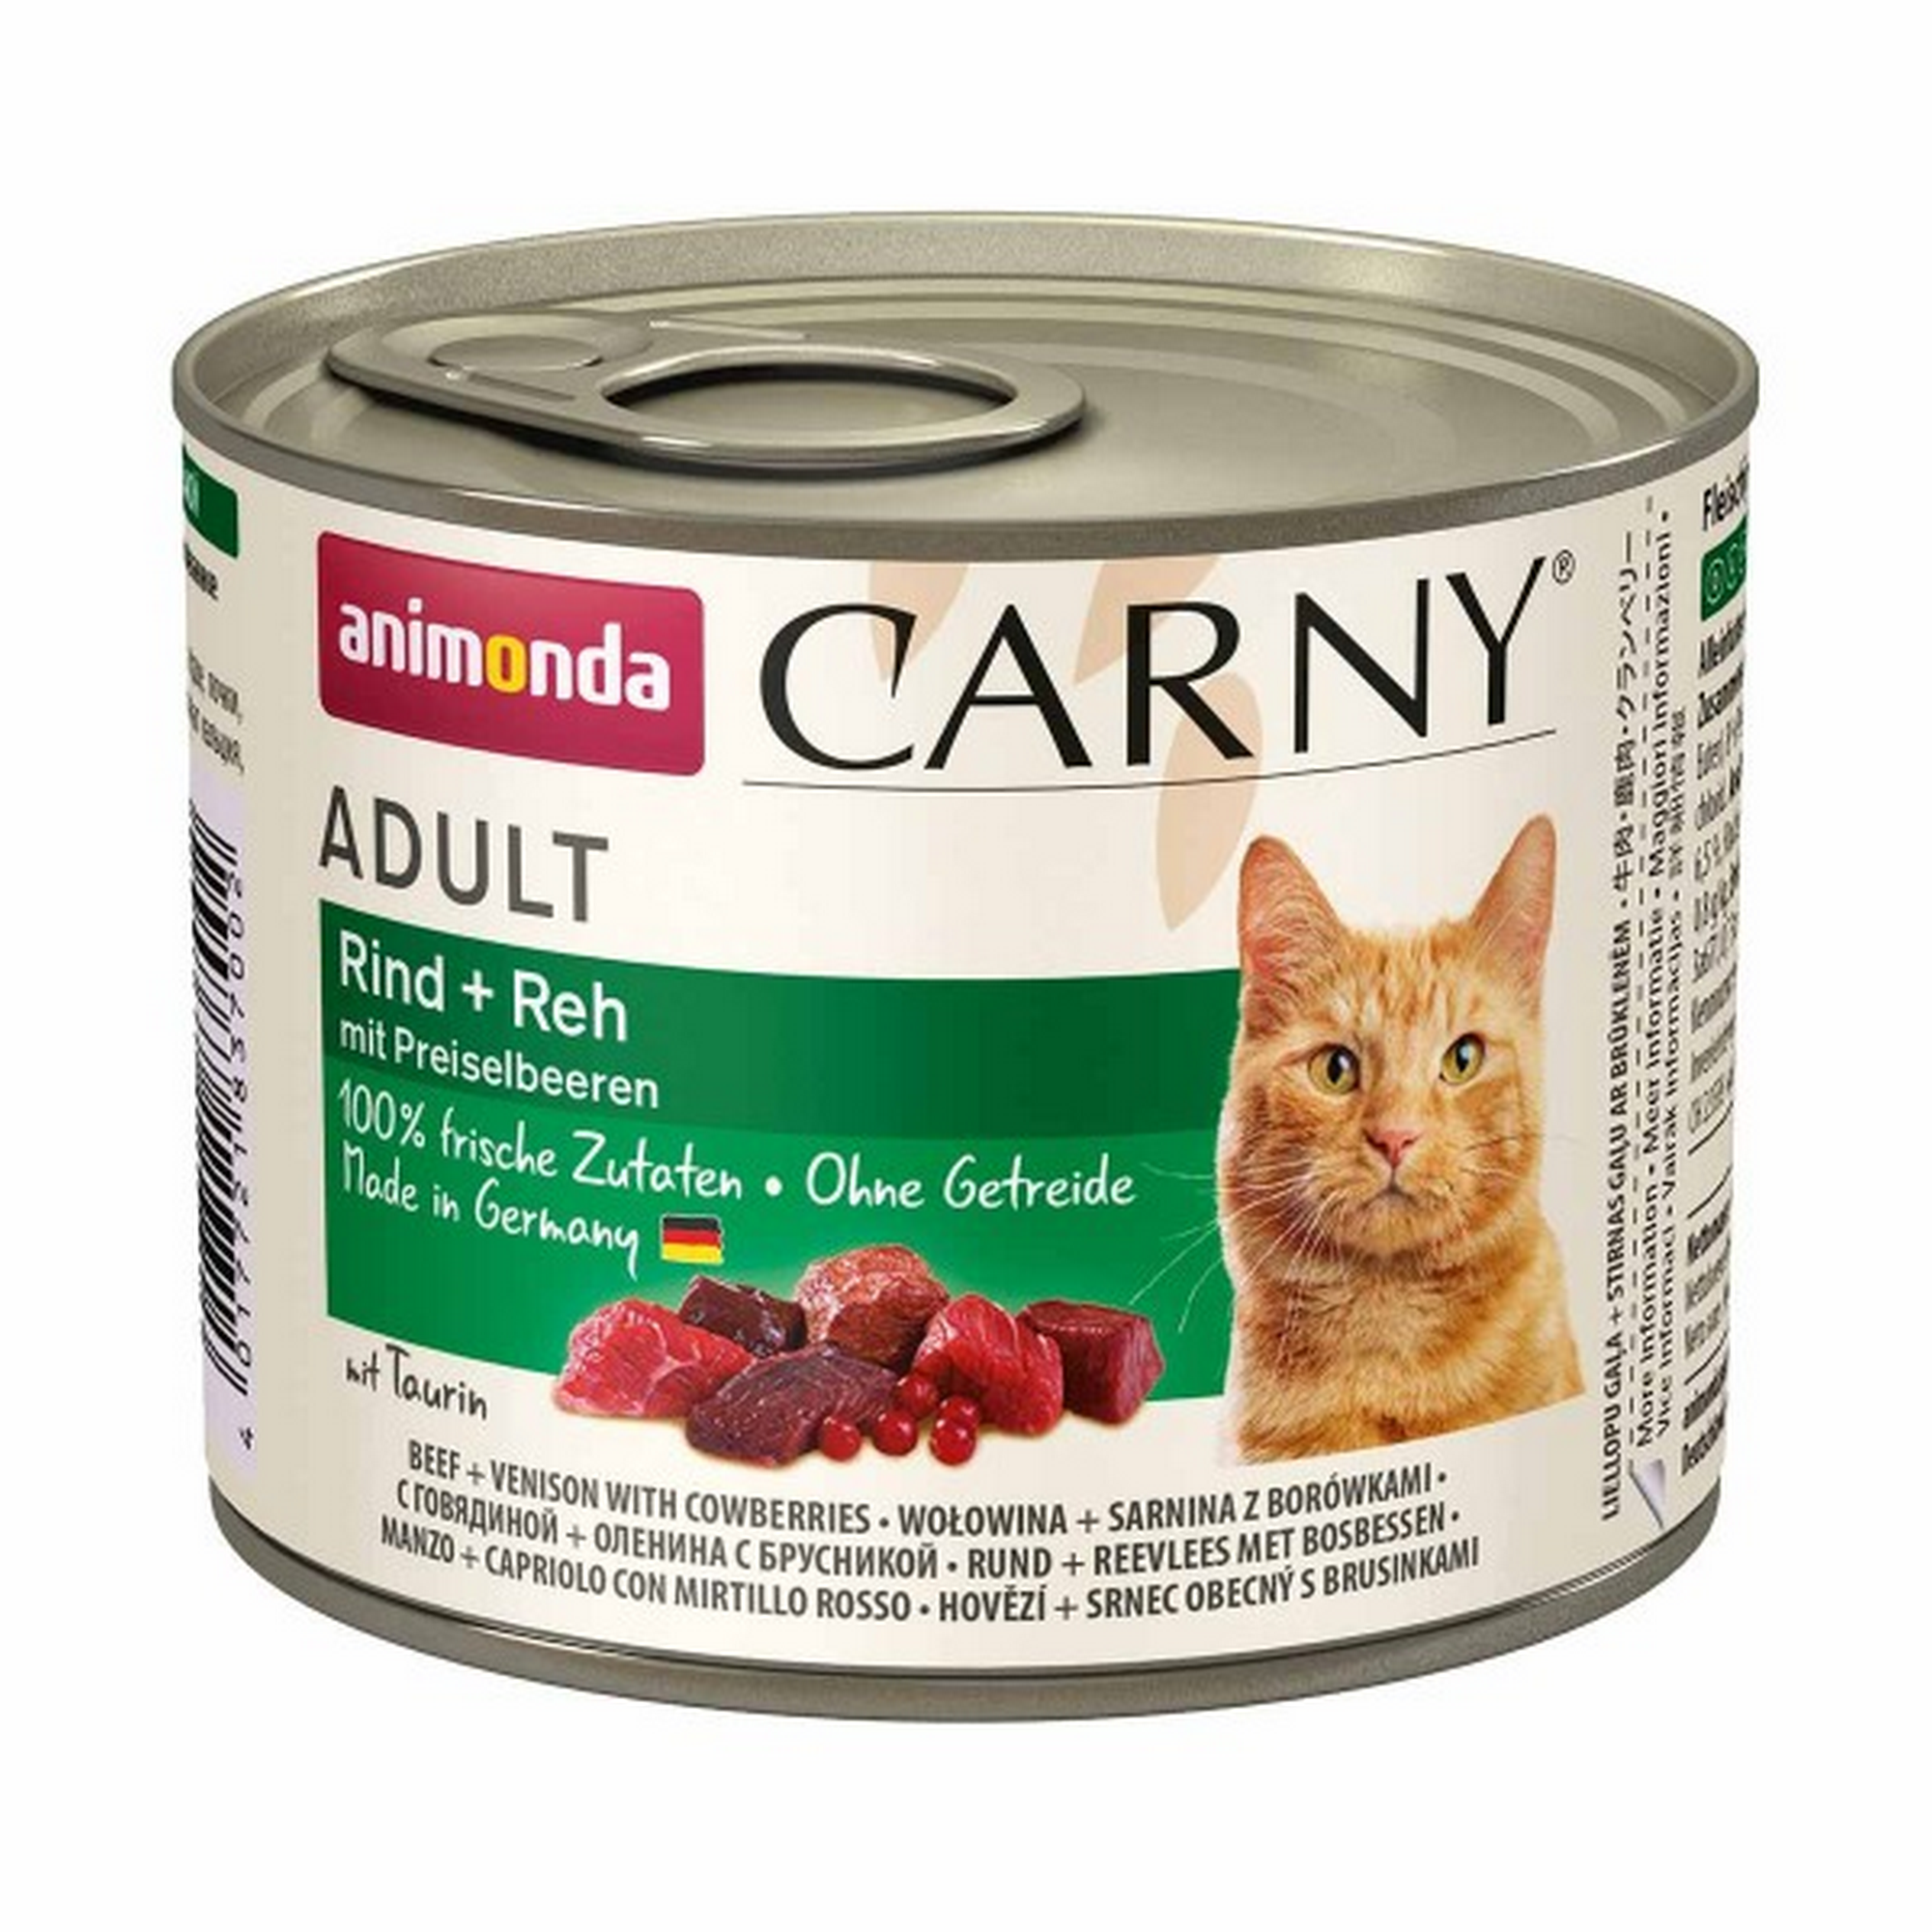 Katzennassfutter 'Carny' Adult Rind und Reh mit Preiselbeeren 200 g + product picture